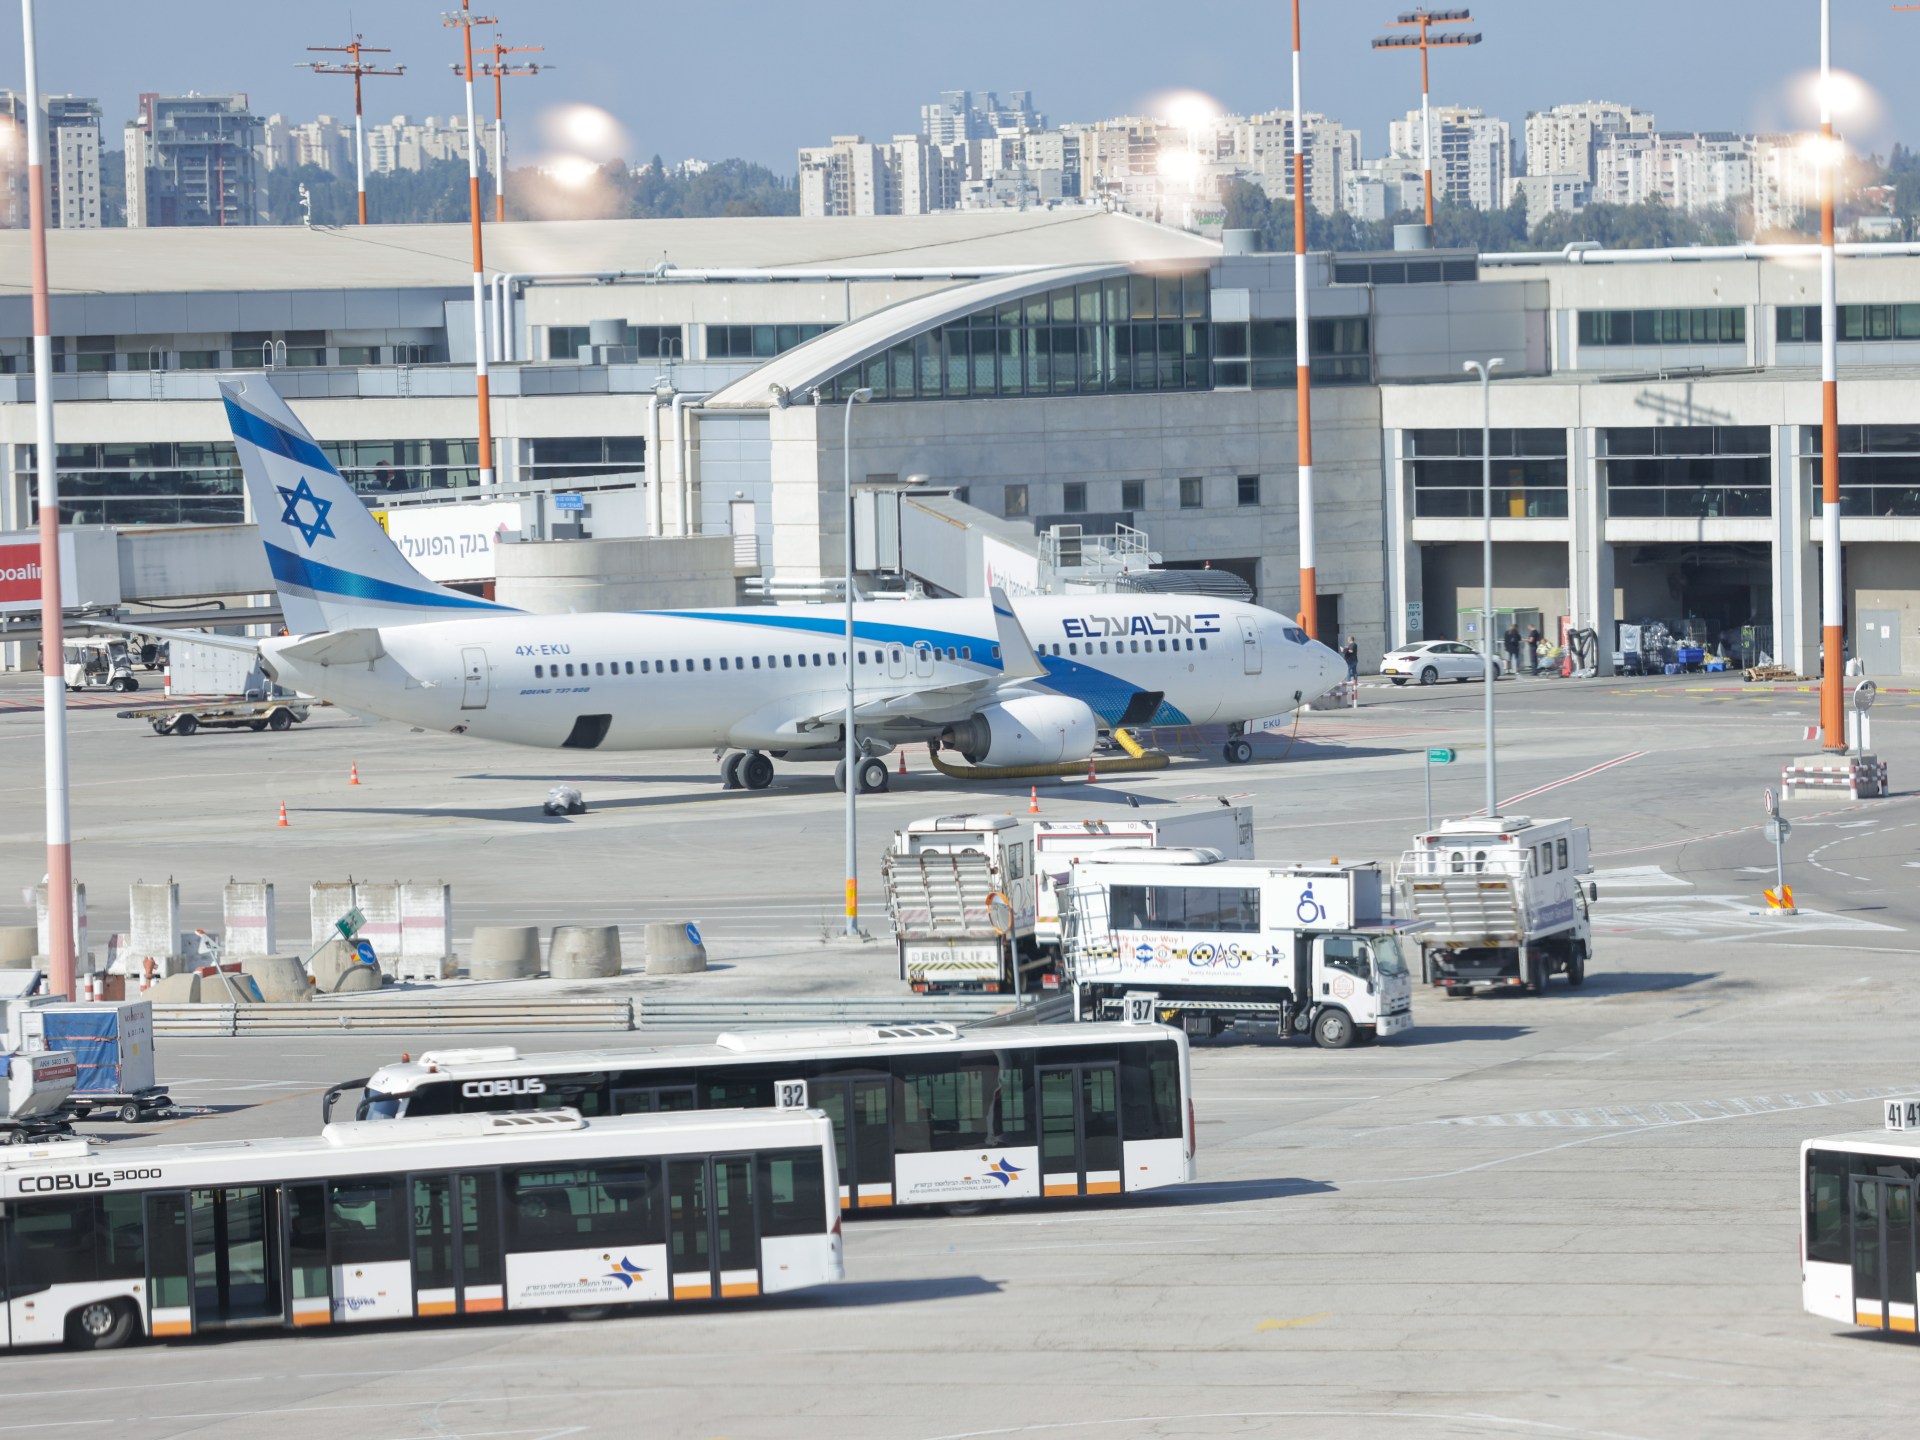 بعد طوفان الأقصى.. إسرائيل تخصص 6 مليارات دولار لتأمين شركات طيرانها | اقتصاد – البوكس نيوز